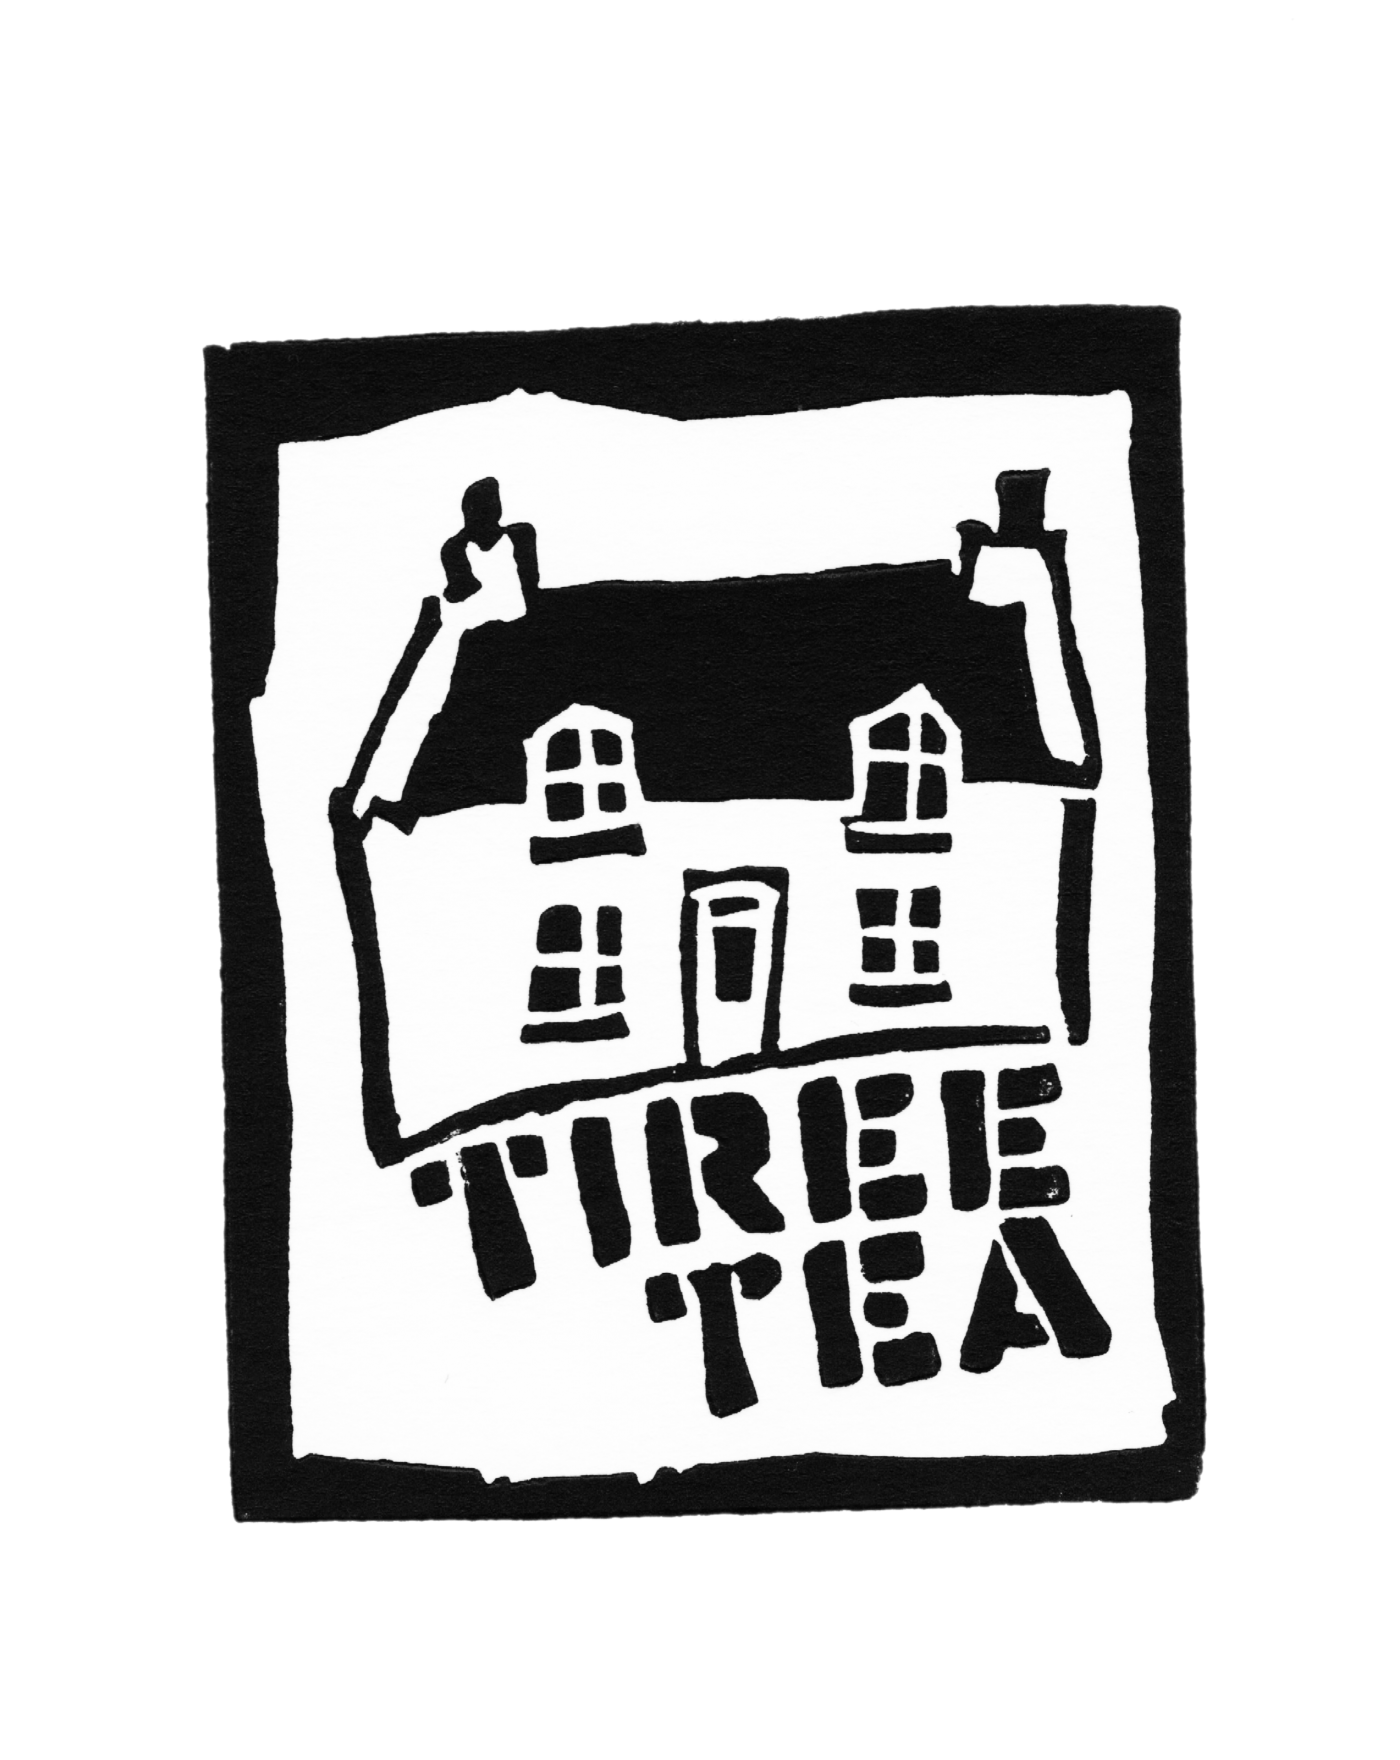 Tiree Tea image